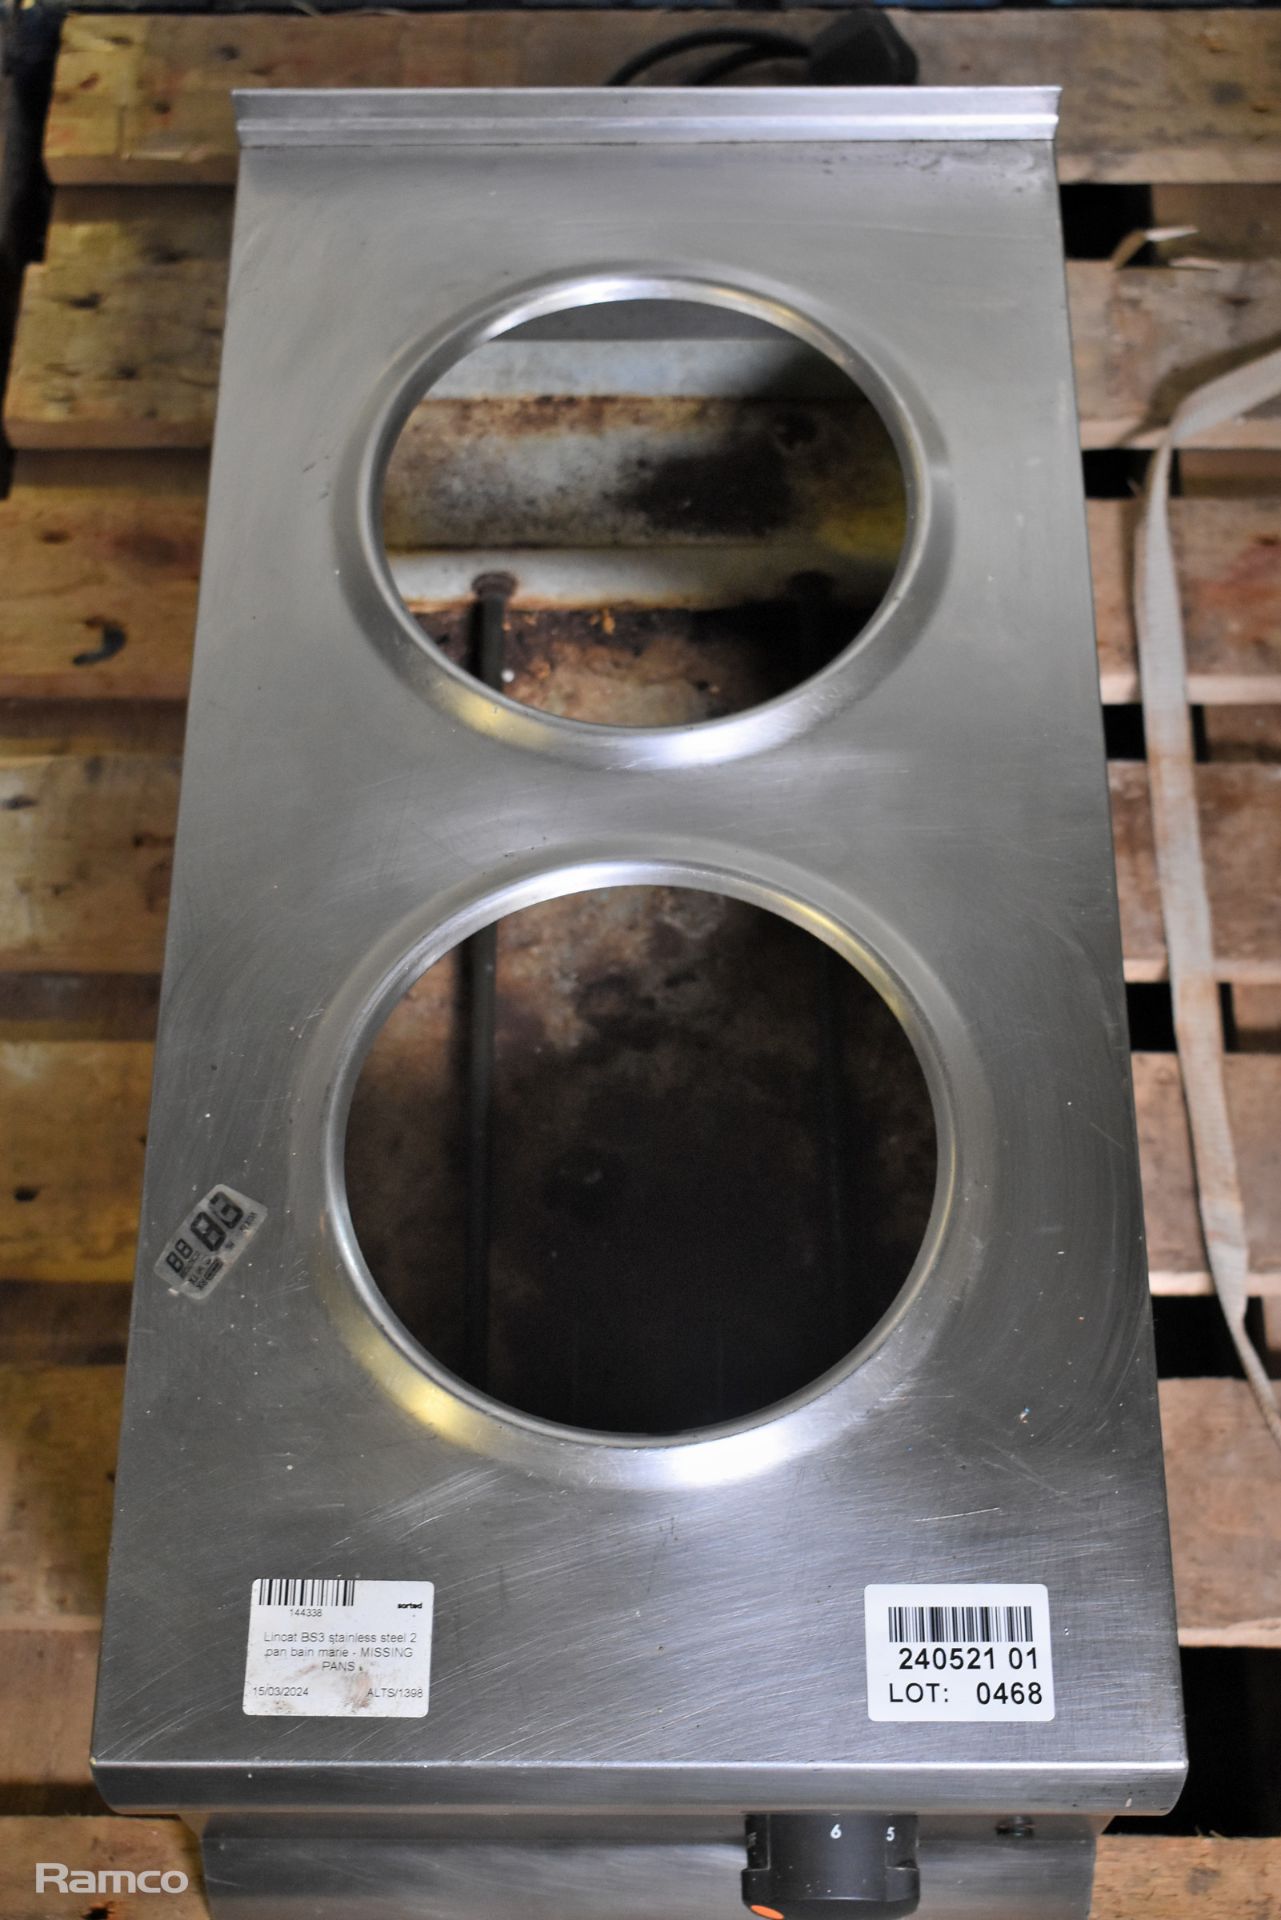 Lincat BS3 stainless steel 2 pan bain marie - MISSING PANS - Image 2 of 4